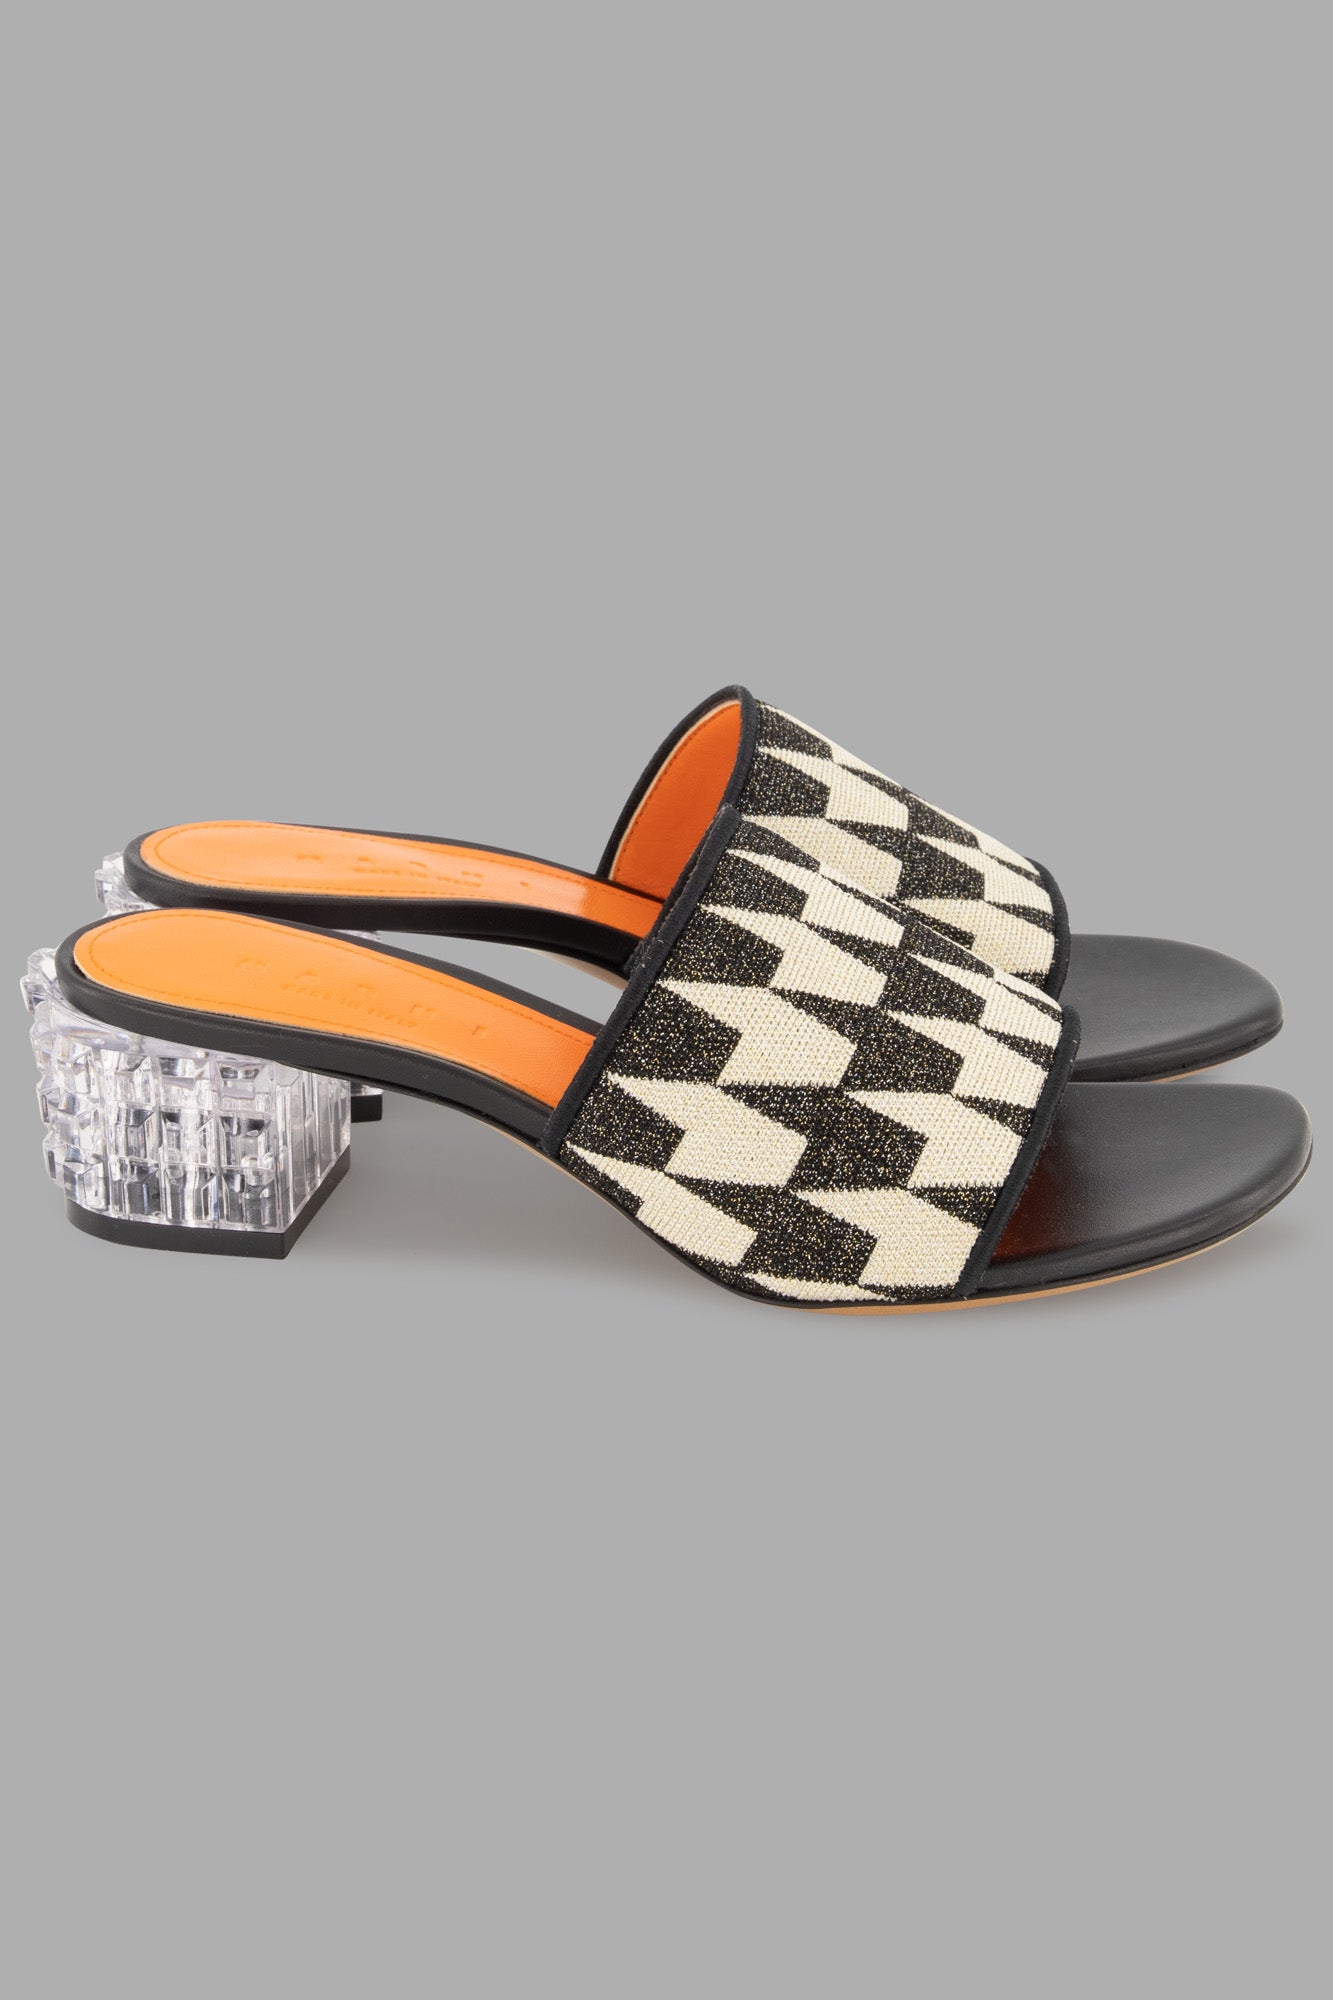 Crystal-heel patterned sandals